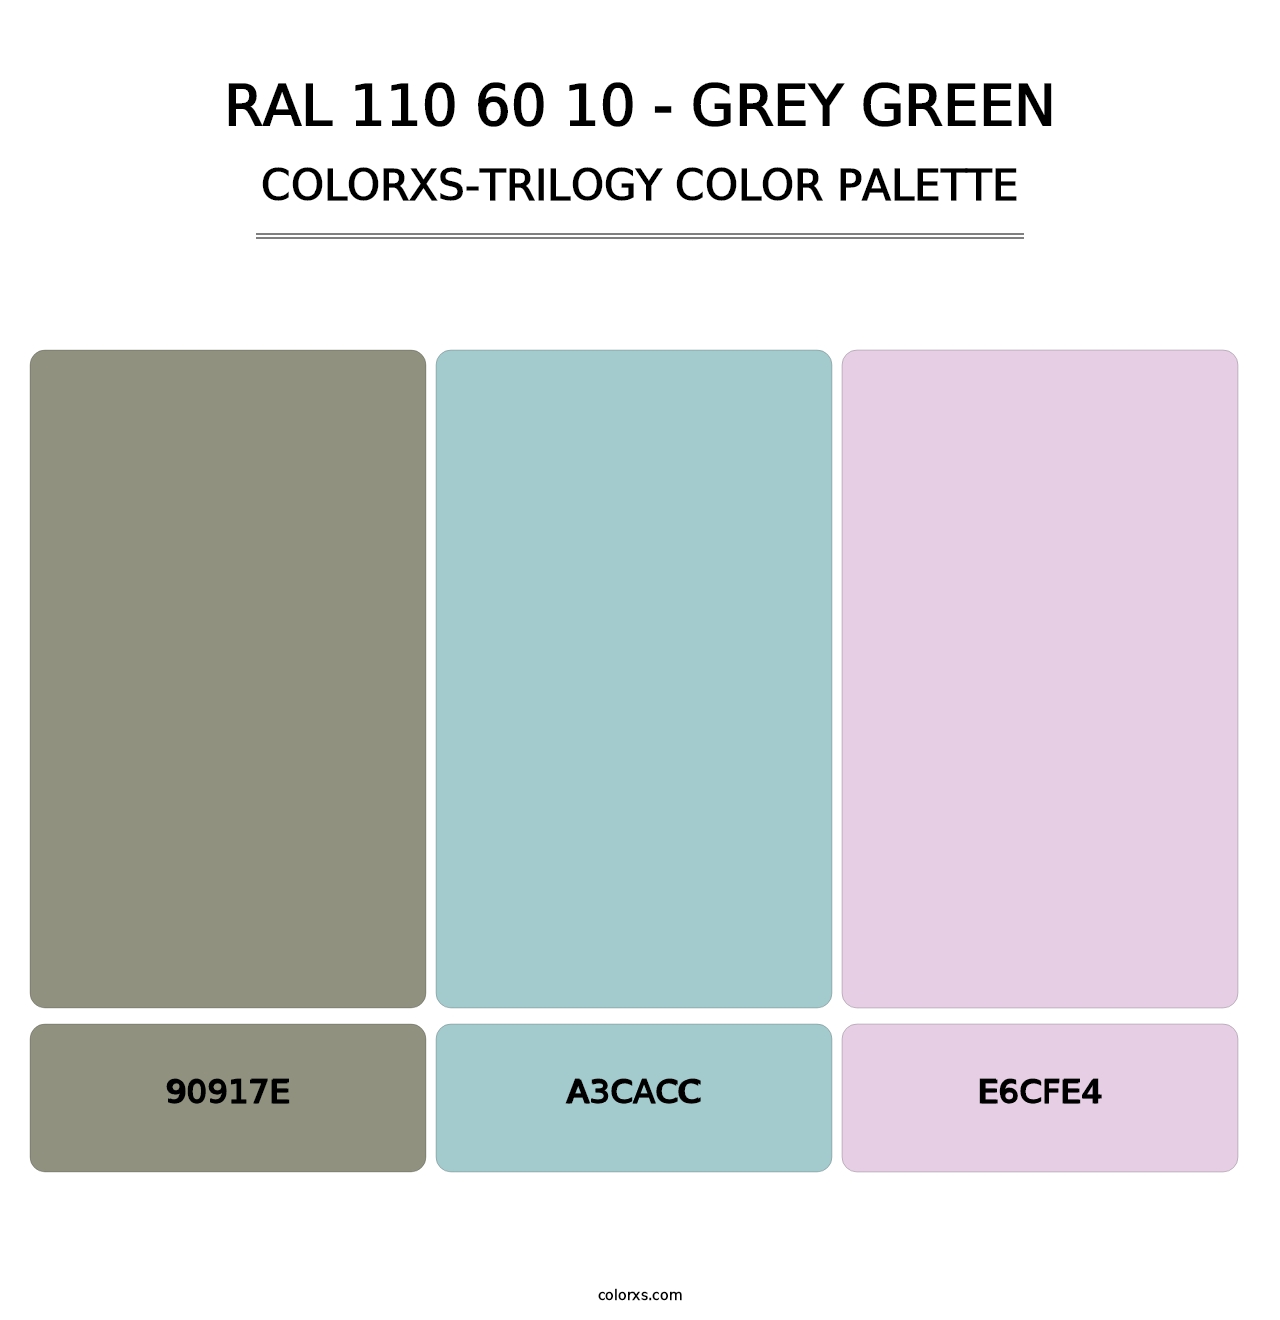 RAL 110 60 10 - Grey Green - Colorxs Trilogy Palette